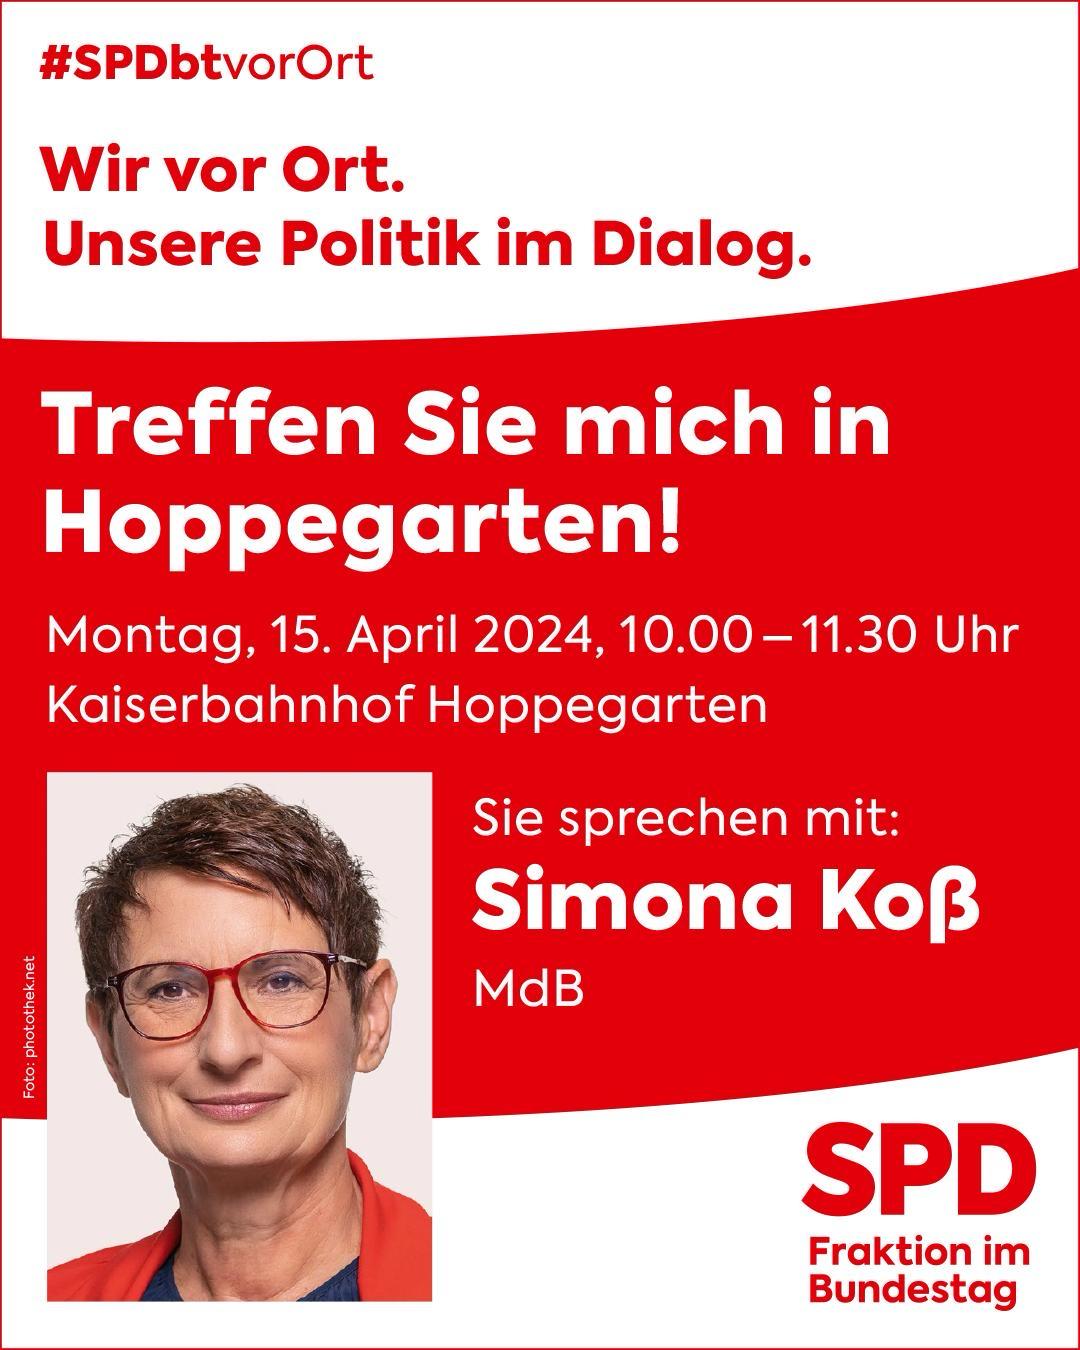 Simona Koß: Treffen Sie mich in Hoppegarten 15.04. 10-11:30 Uhr